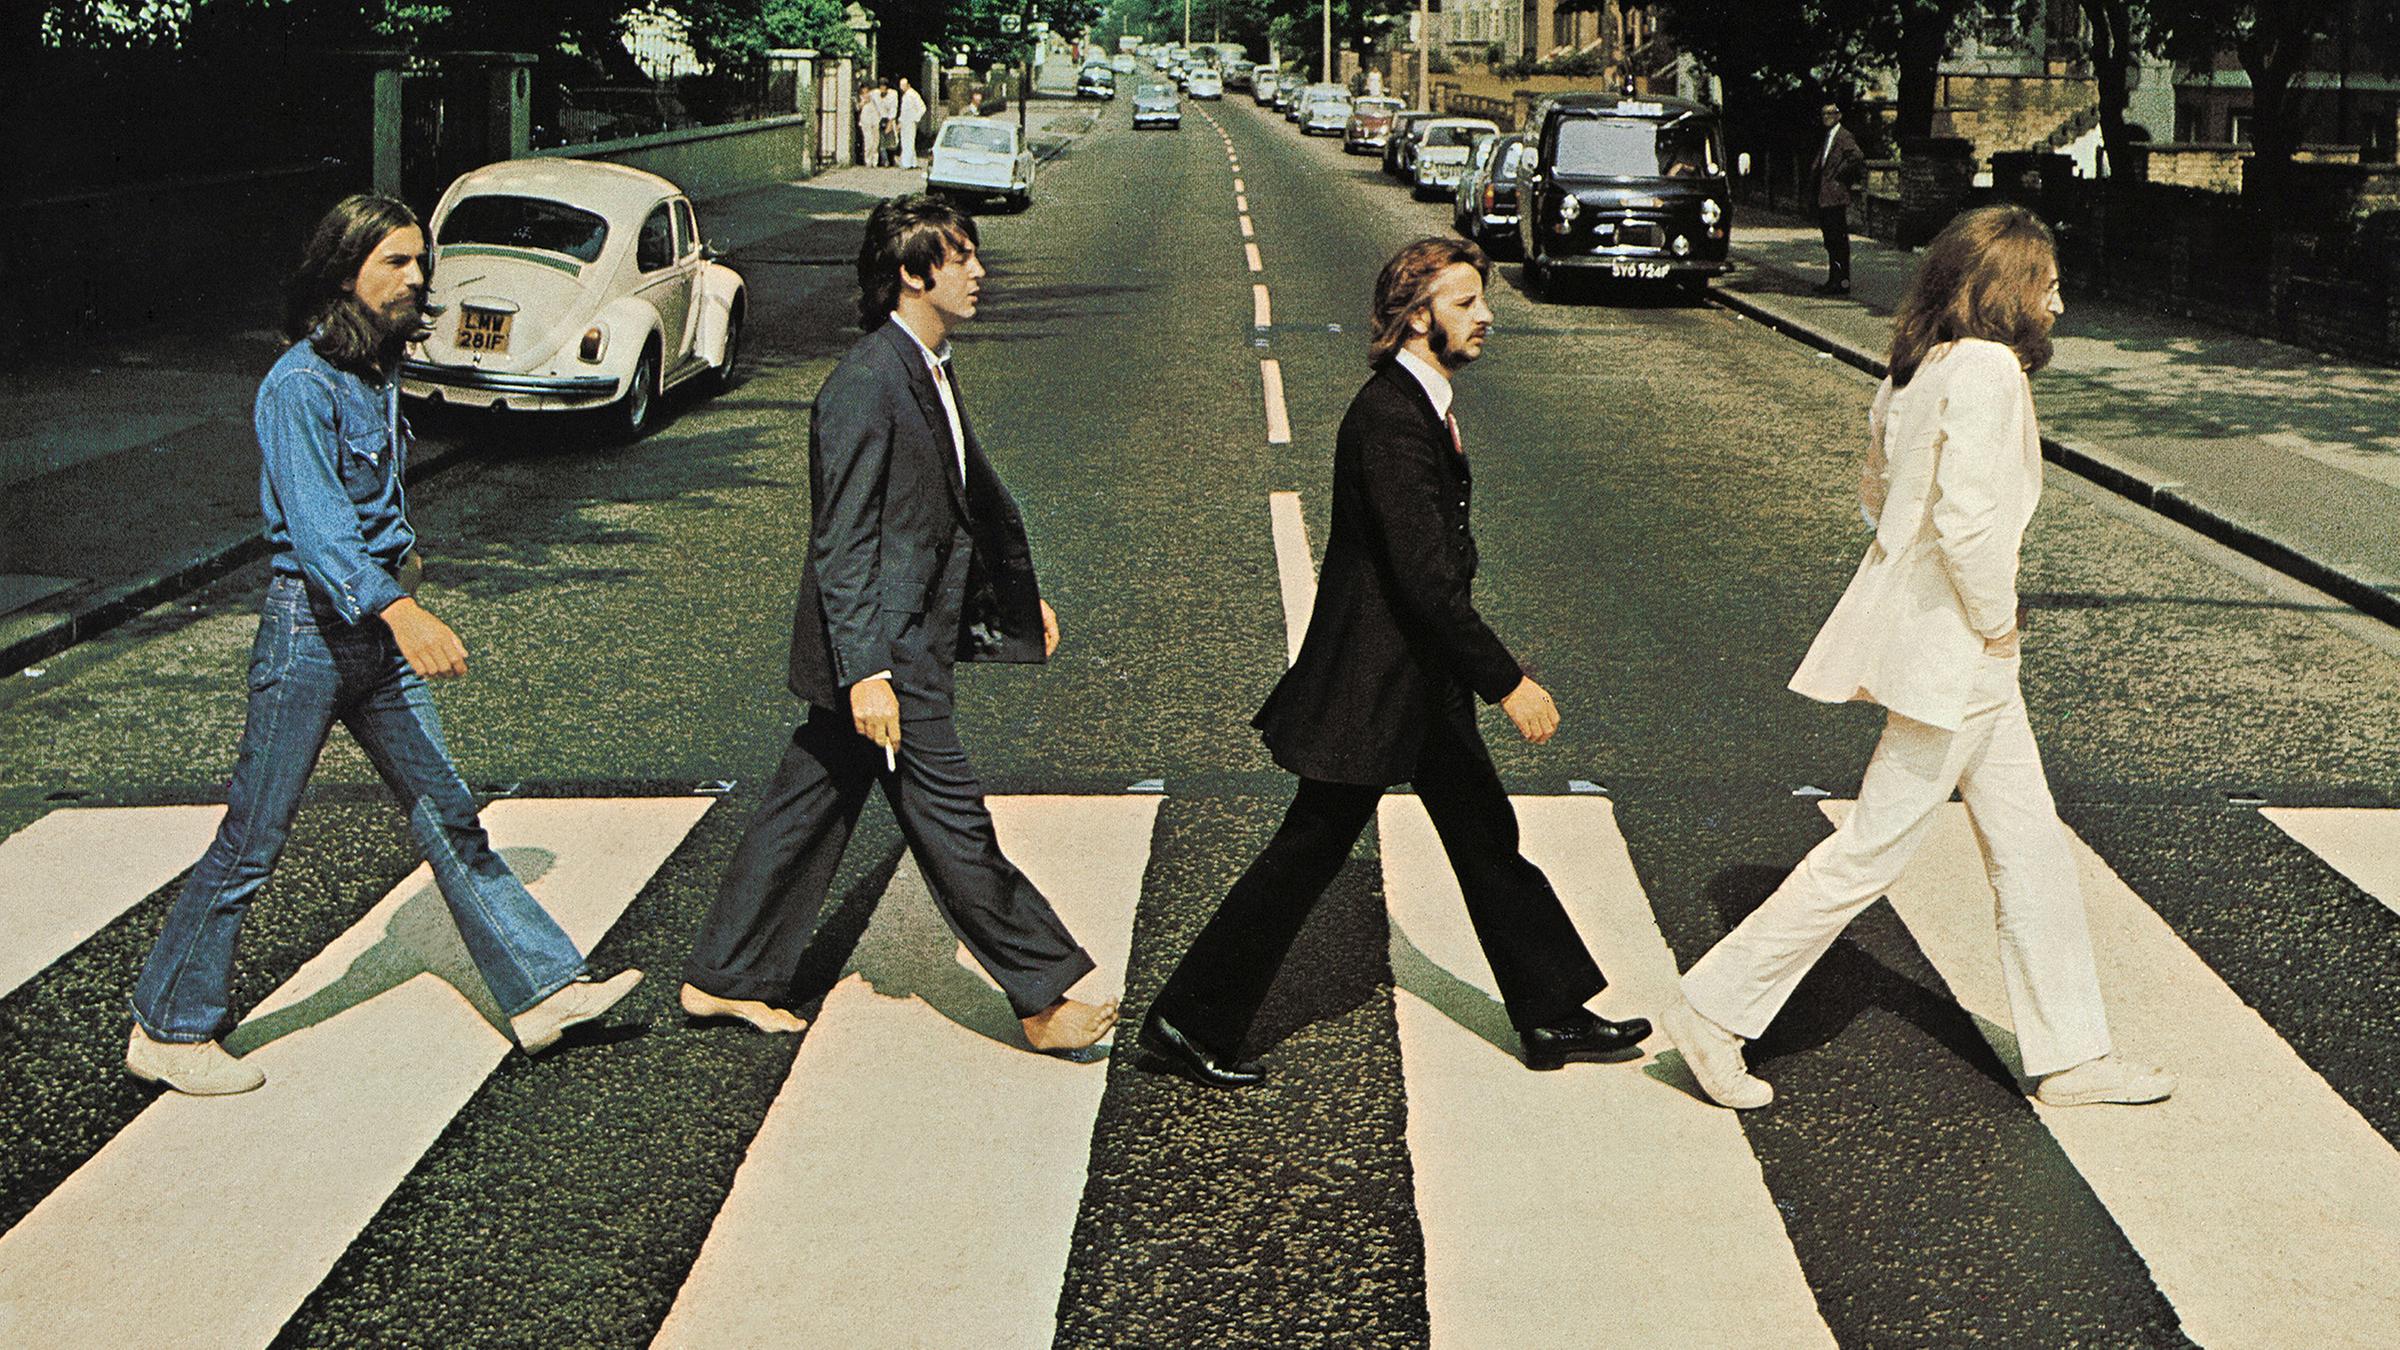 Das Bild zeigt das Beatles-Album-Cover mit dem "Abbey Road"-Zebrastreifen.